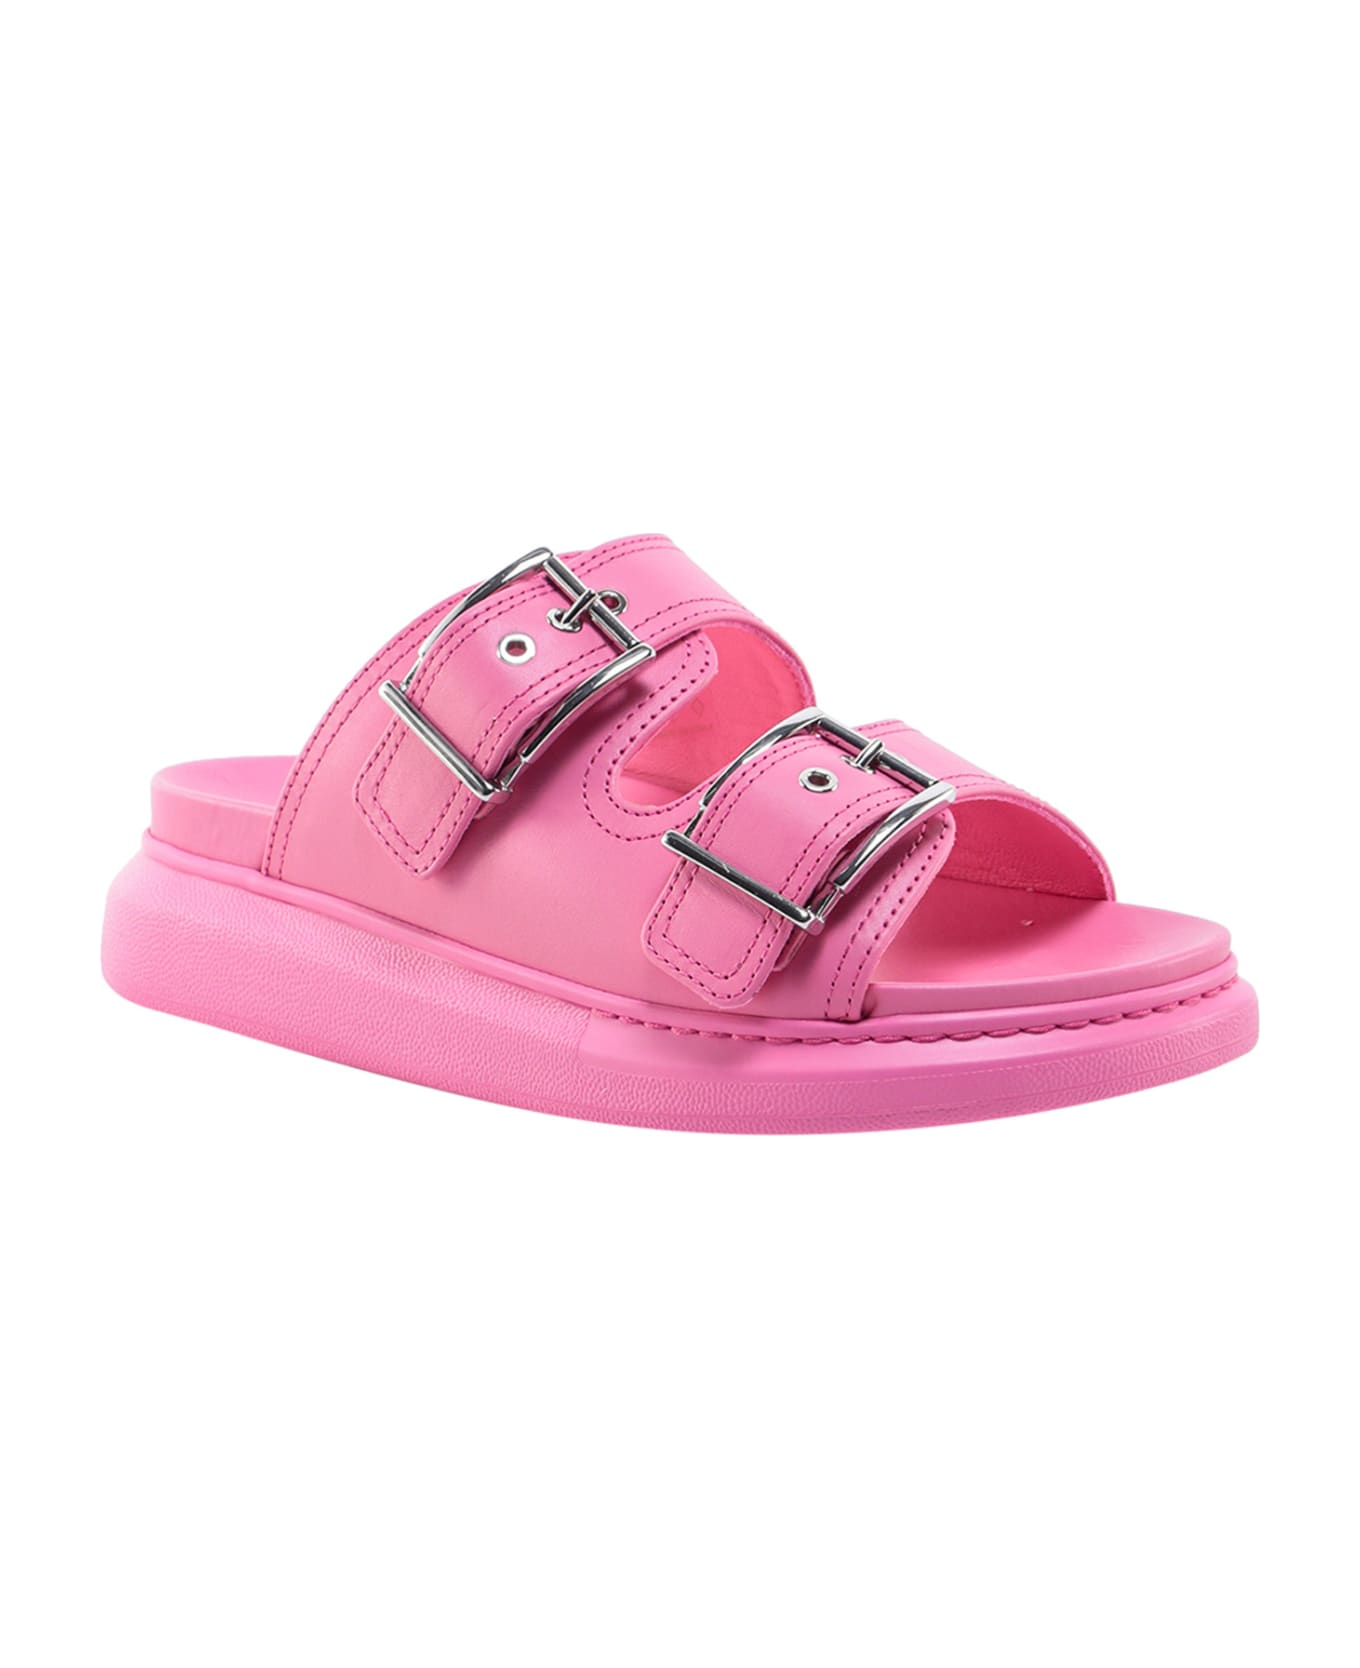 Alexander McQueen Sandals - Pink サンダル